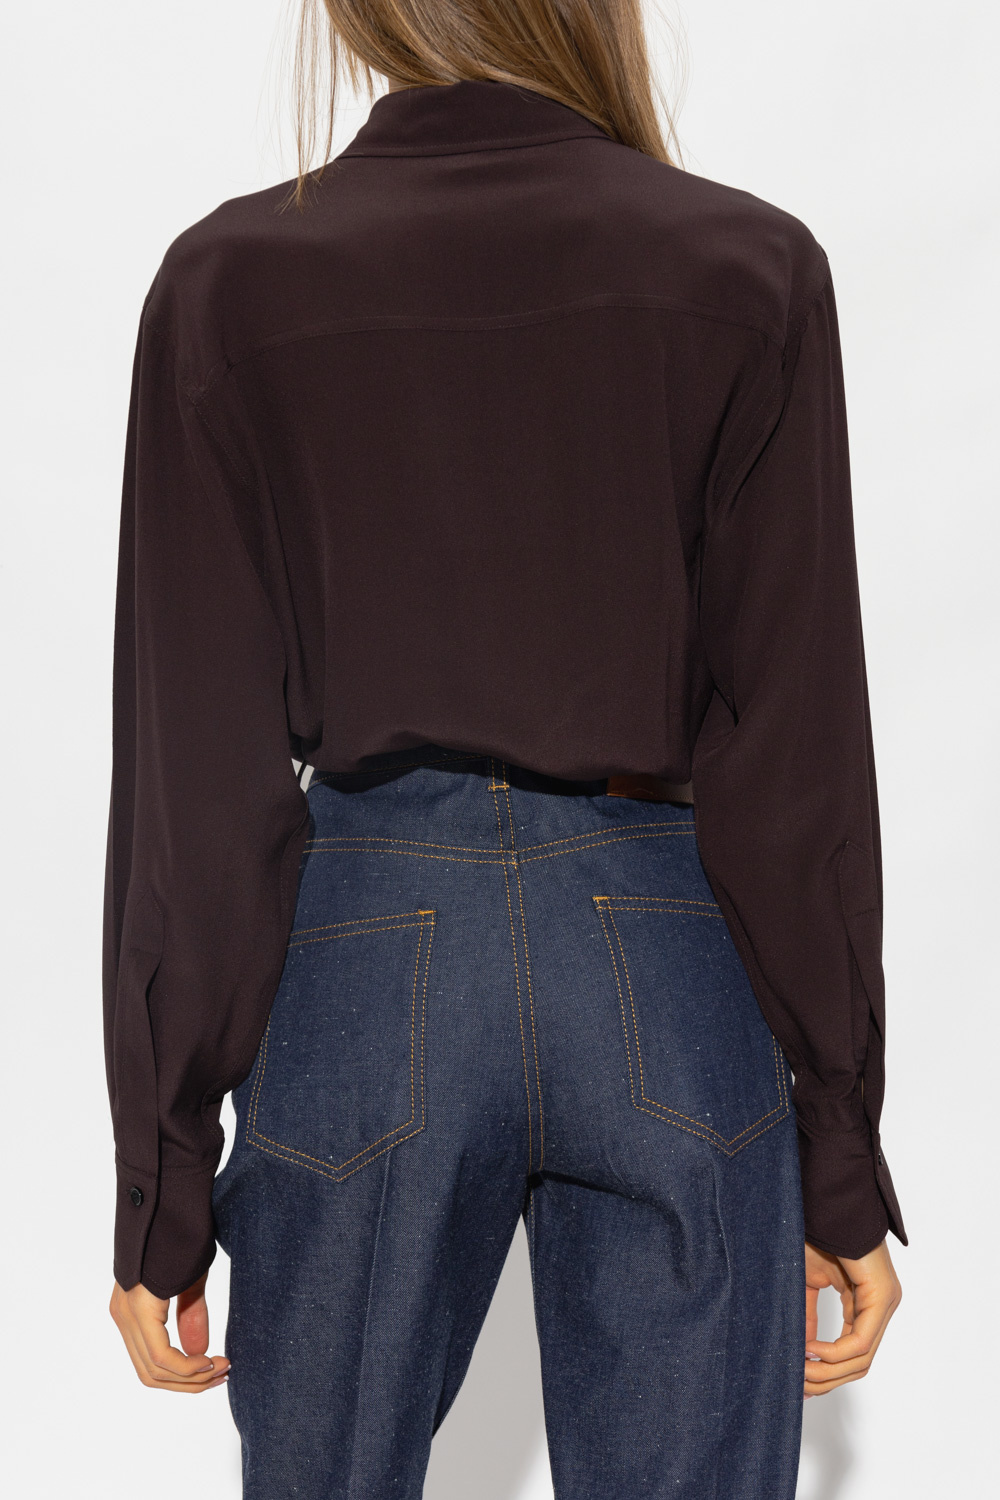 Victoria Beckham Silk camp-collar shirt with pockets